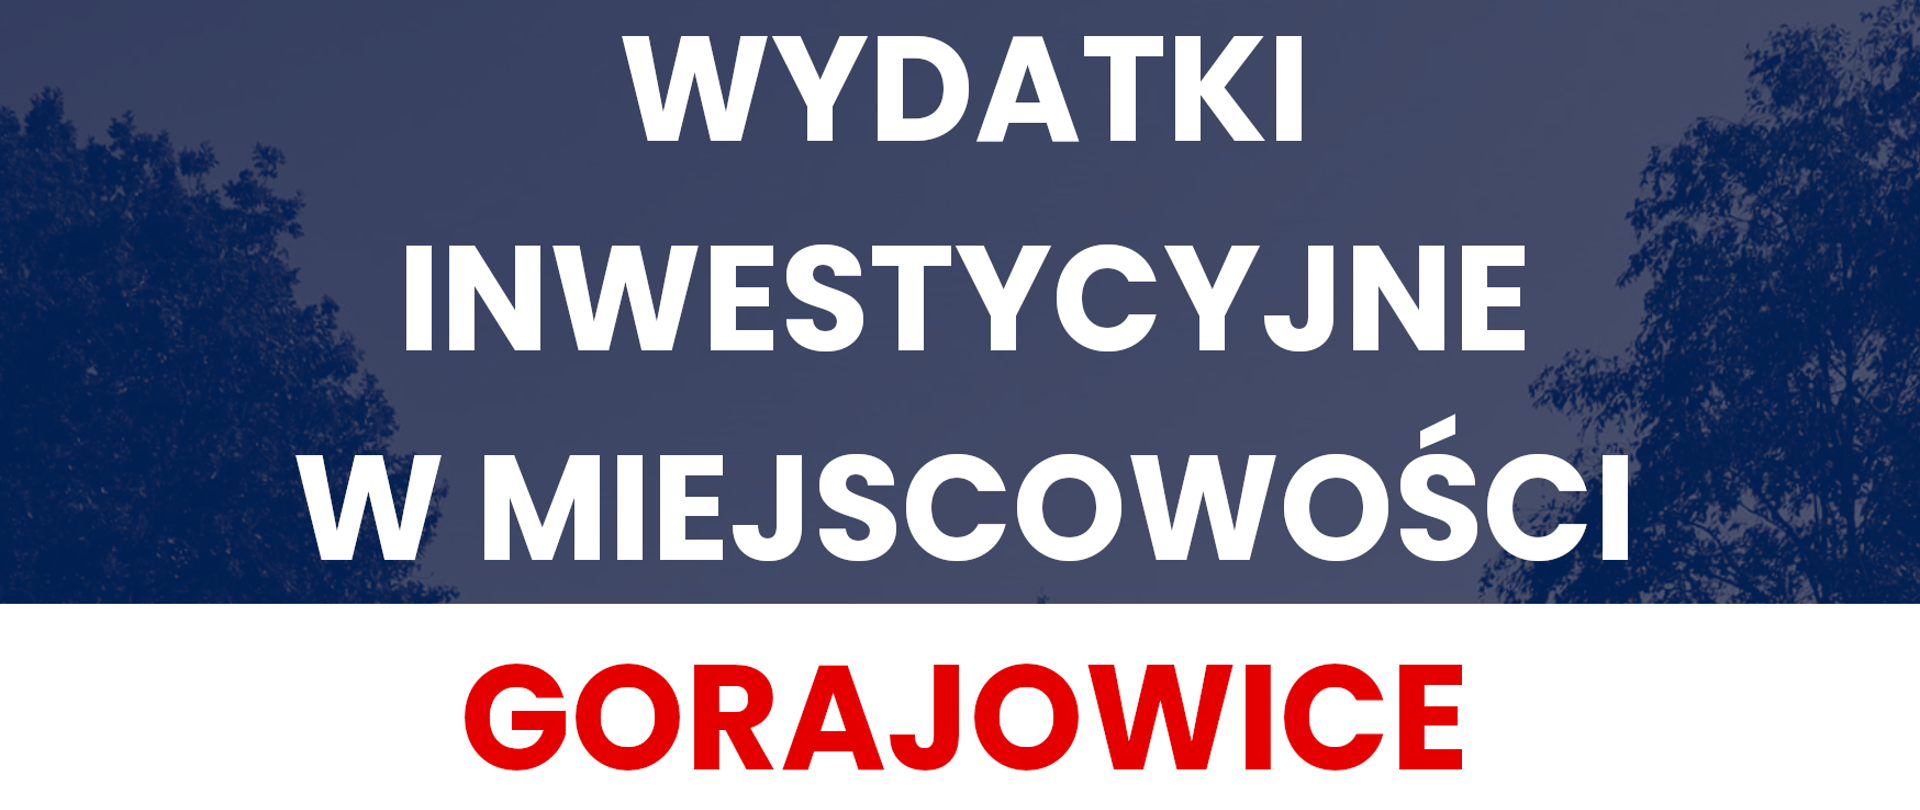 Gorajowice